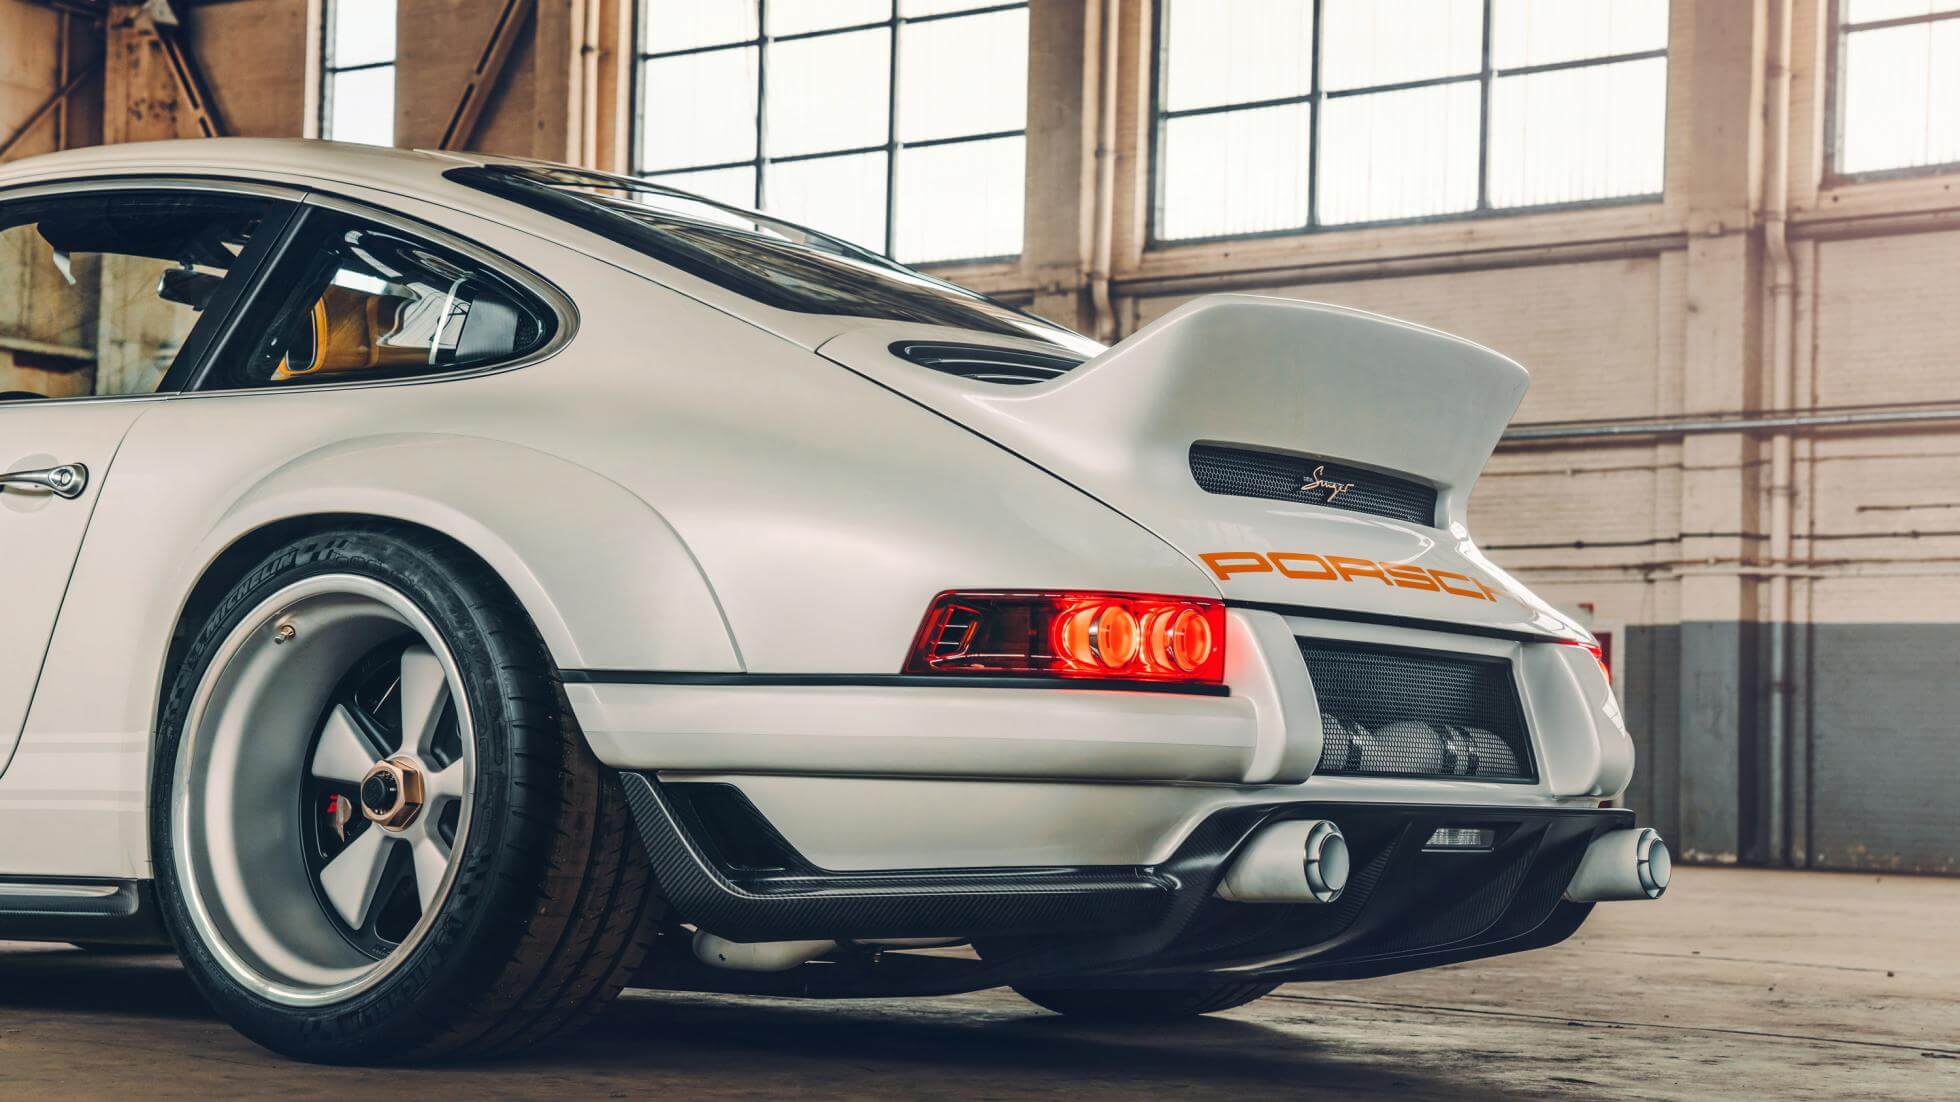 Porsche 911 - Singer Vehichle Design - Top Gear